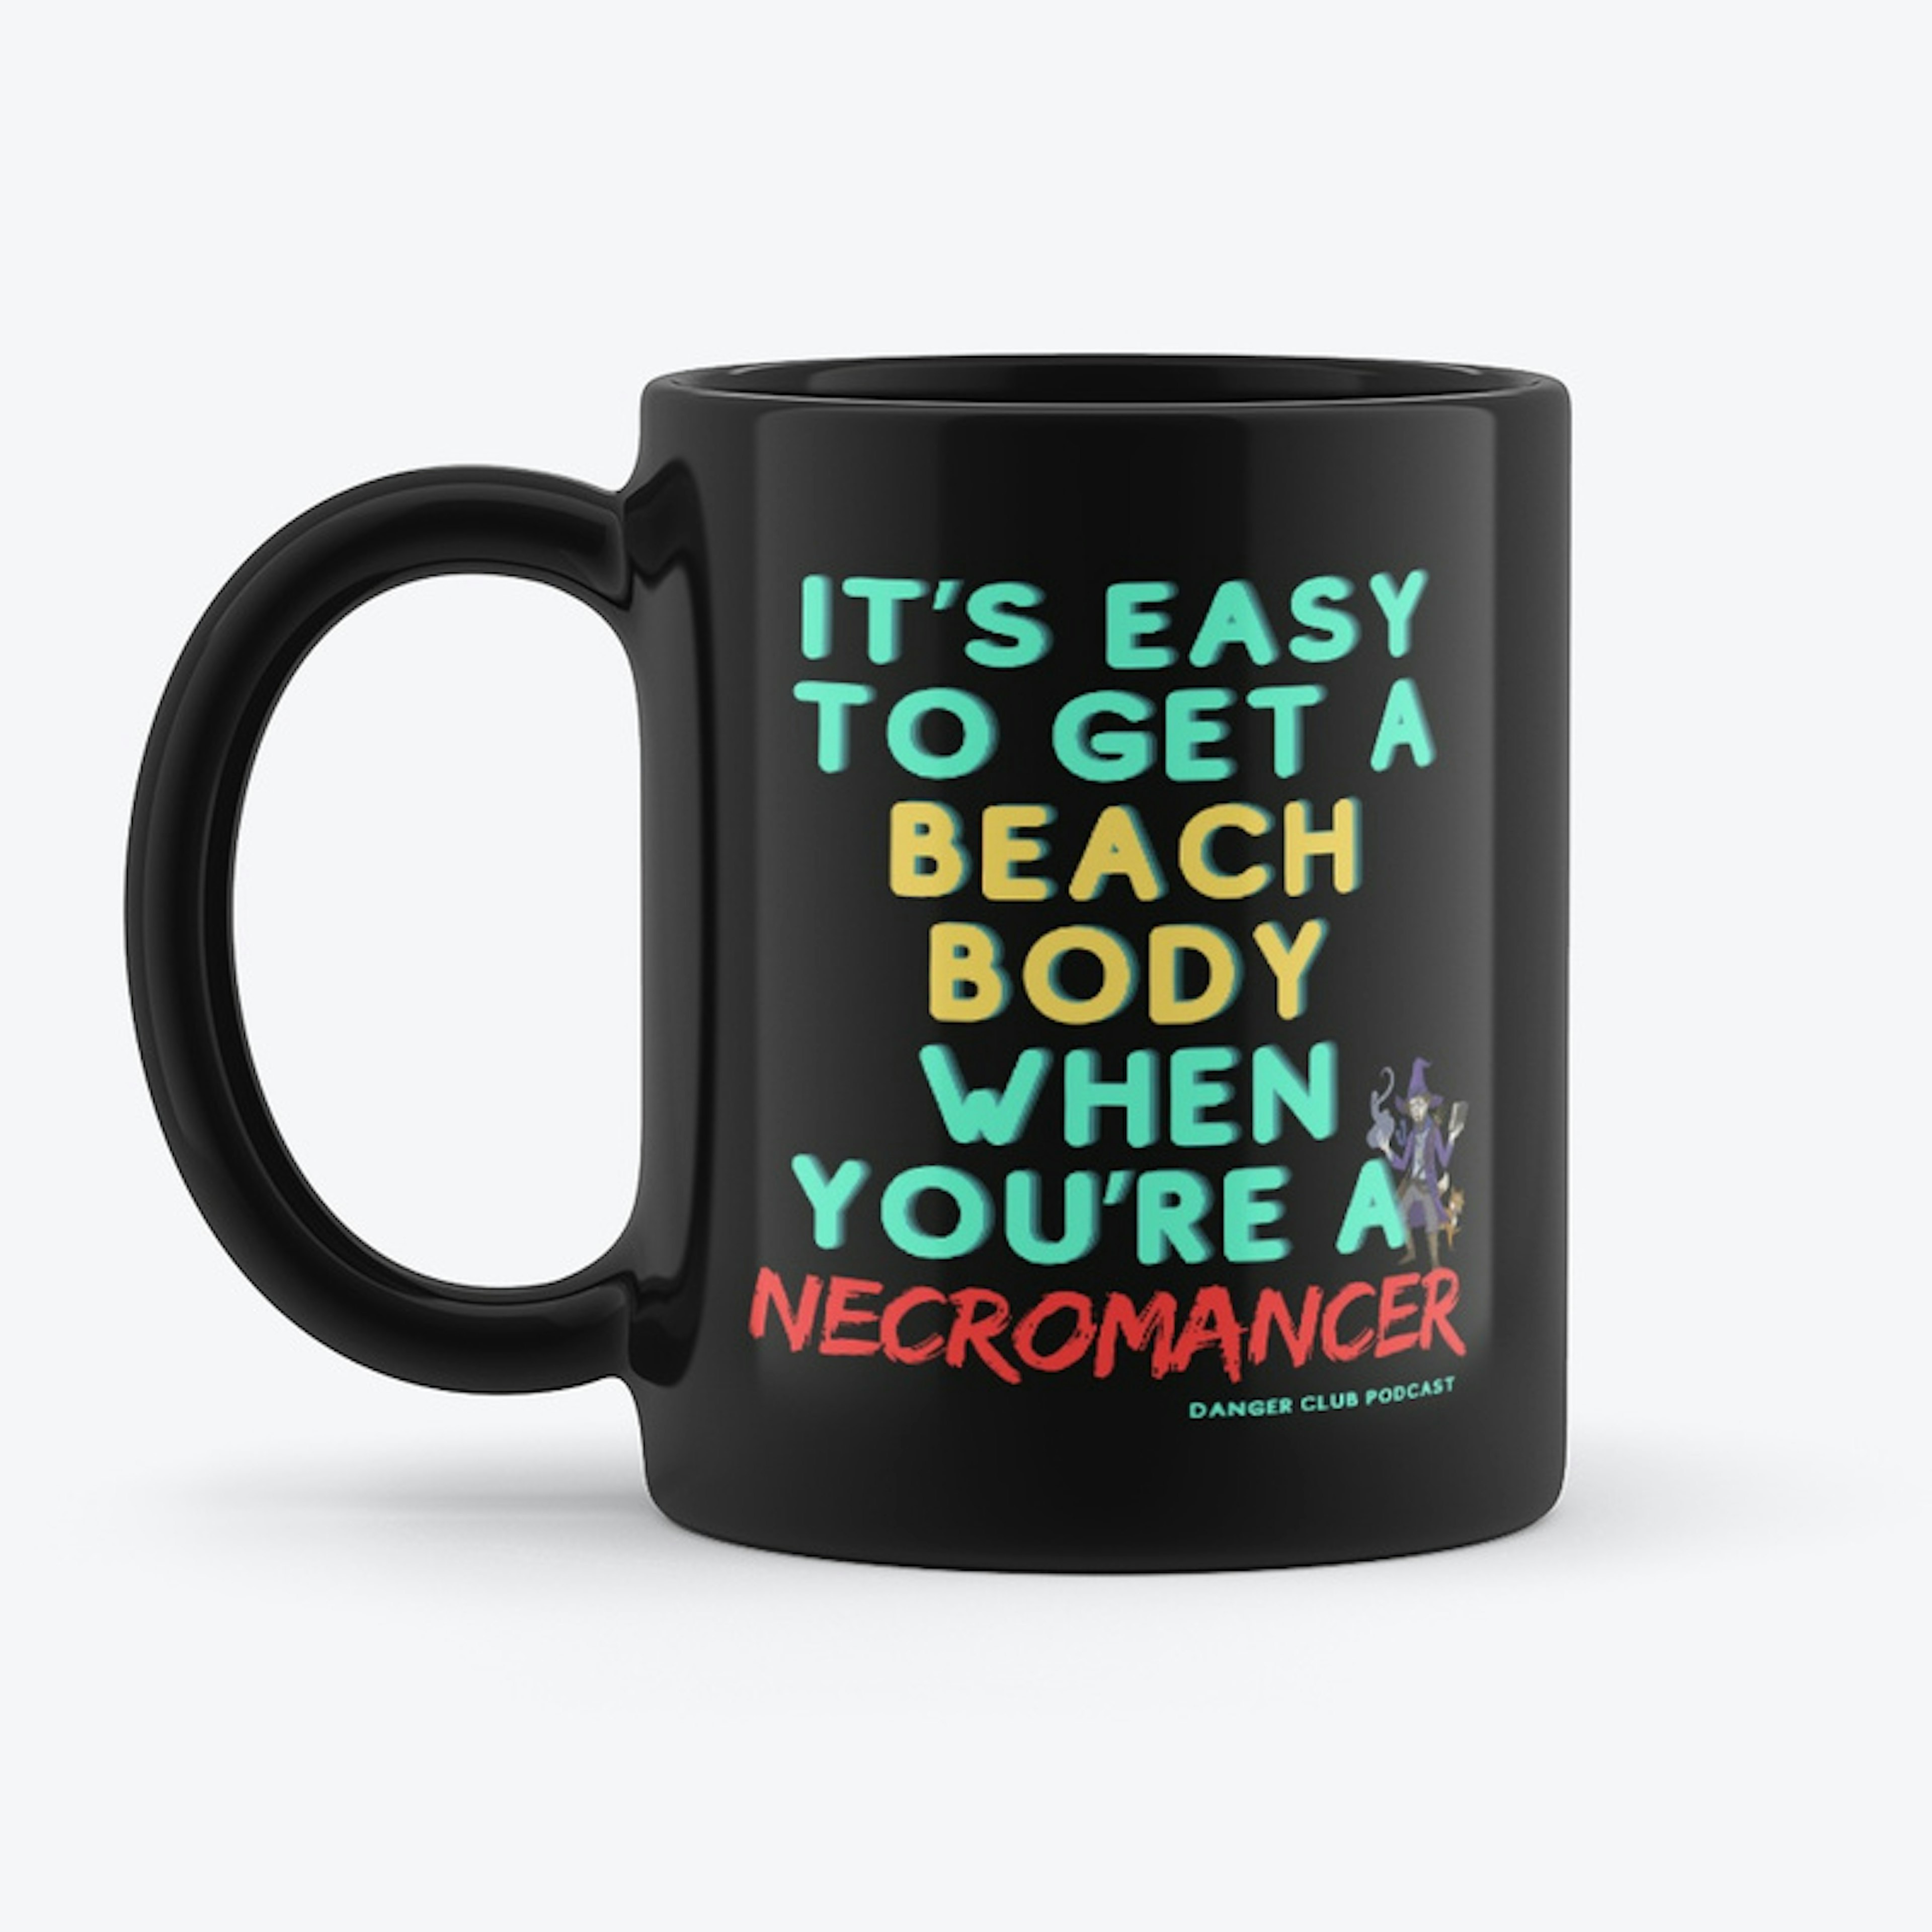 Not a necromancer mug